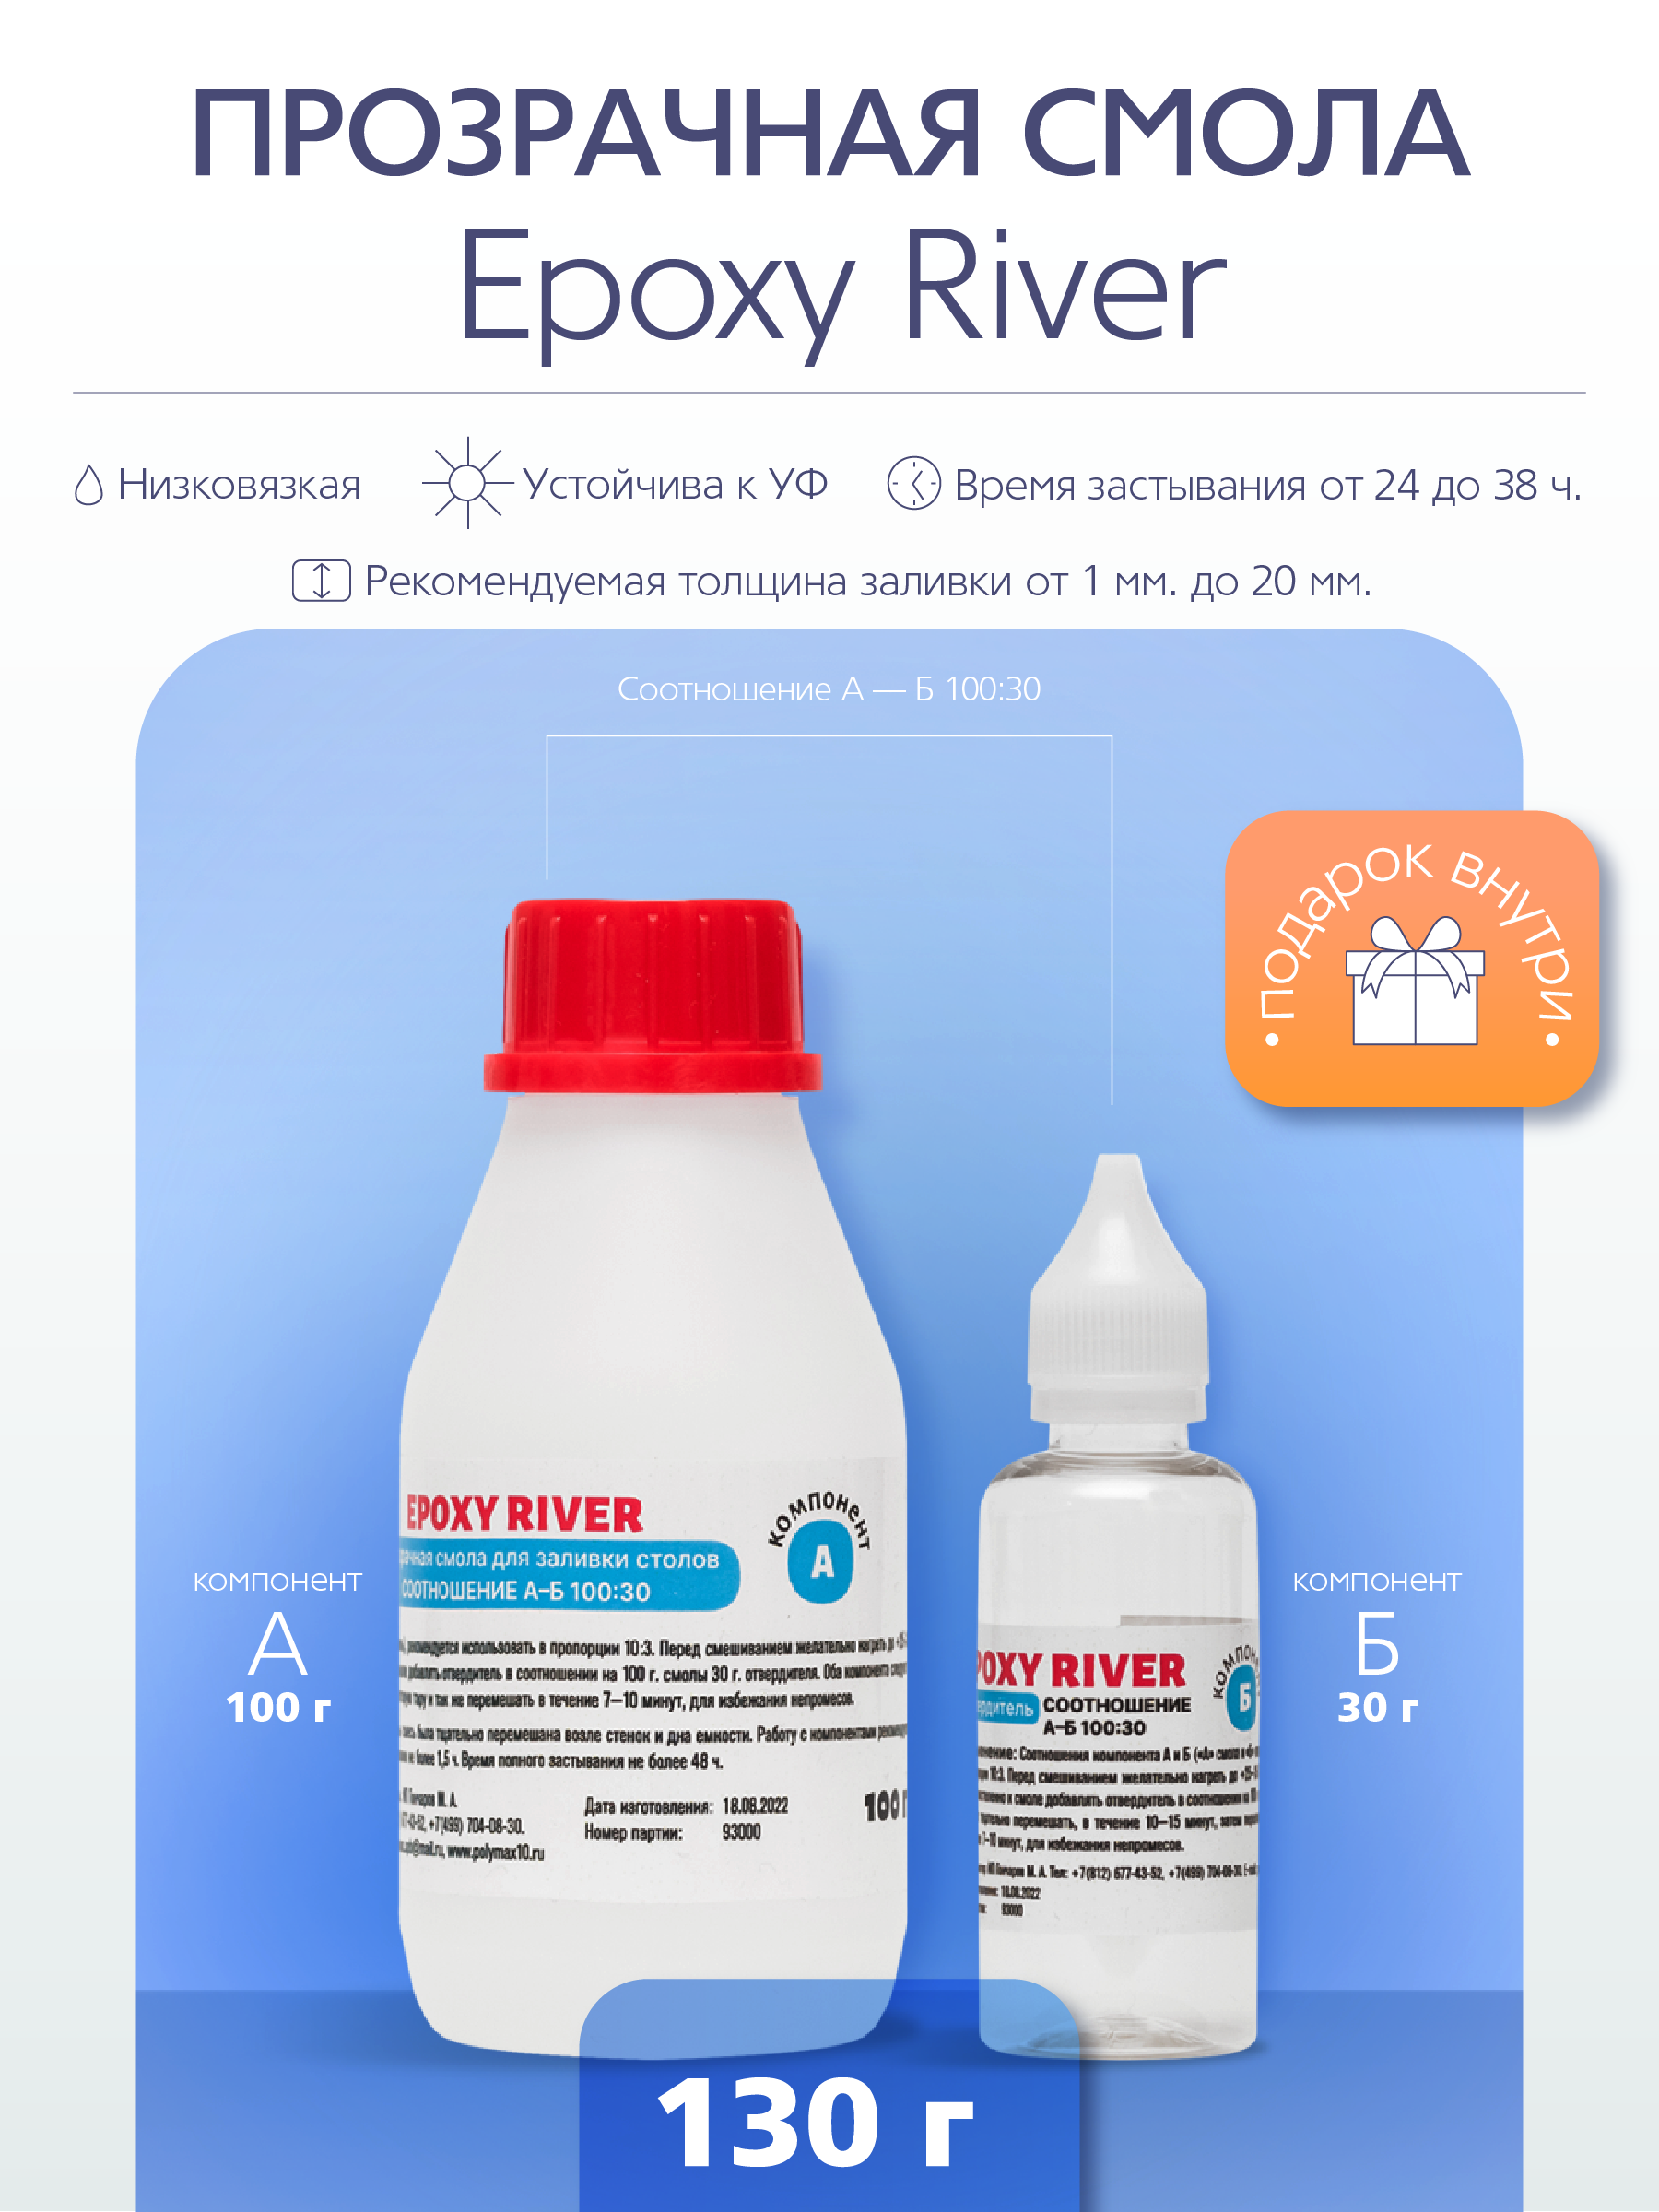 Прозрачная эпоксидная смола Epoxy River 130 г ️  по цене 390 ₽/шт .